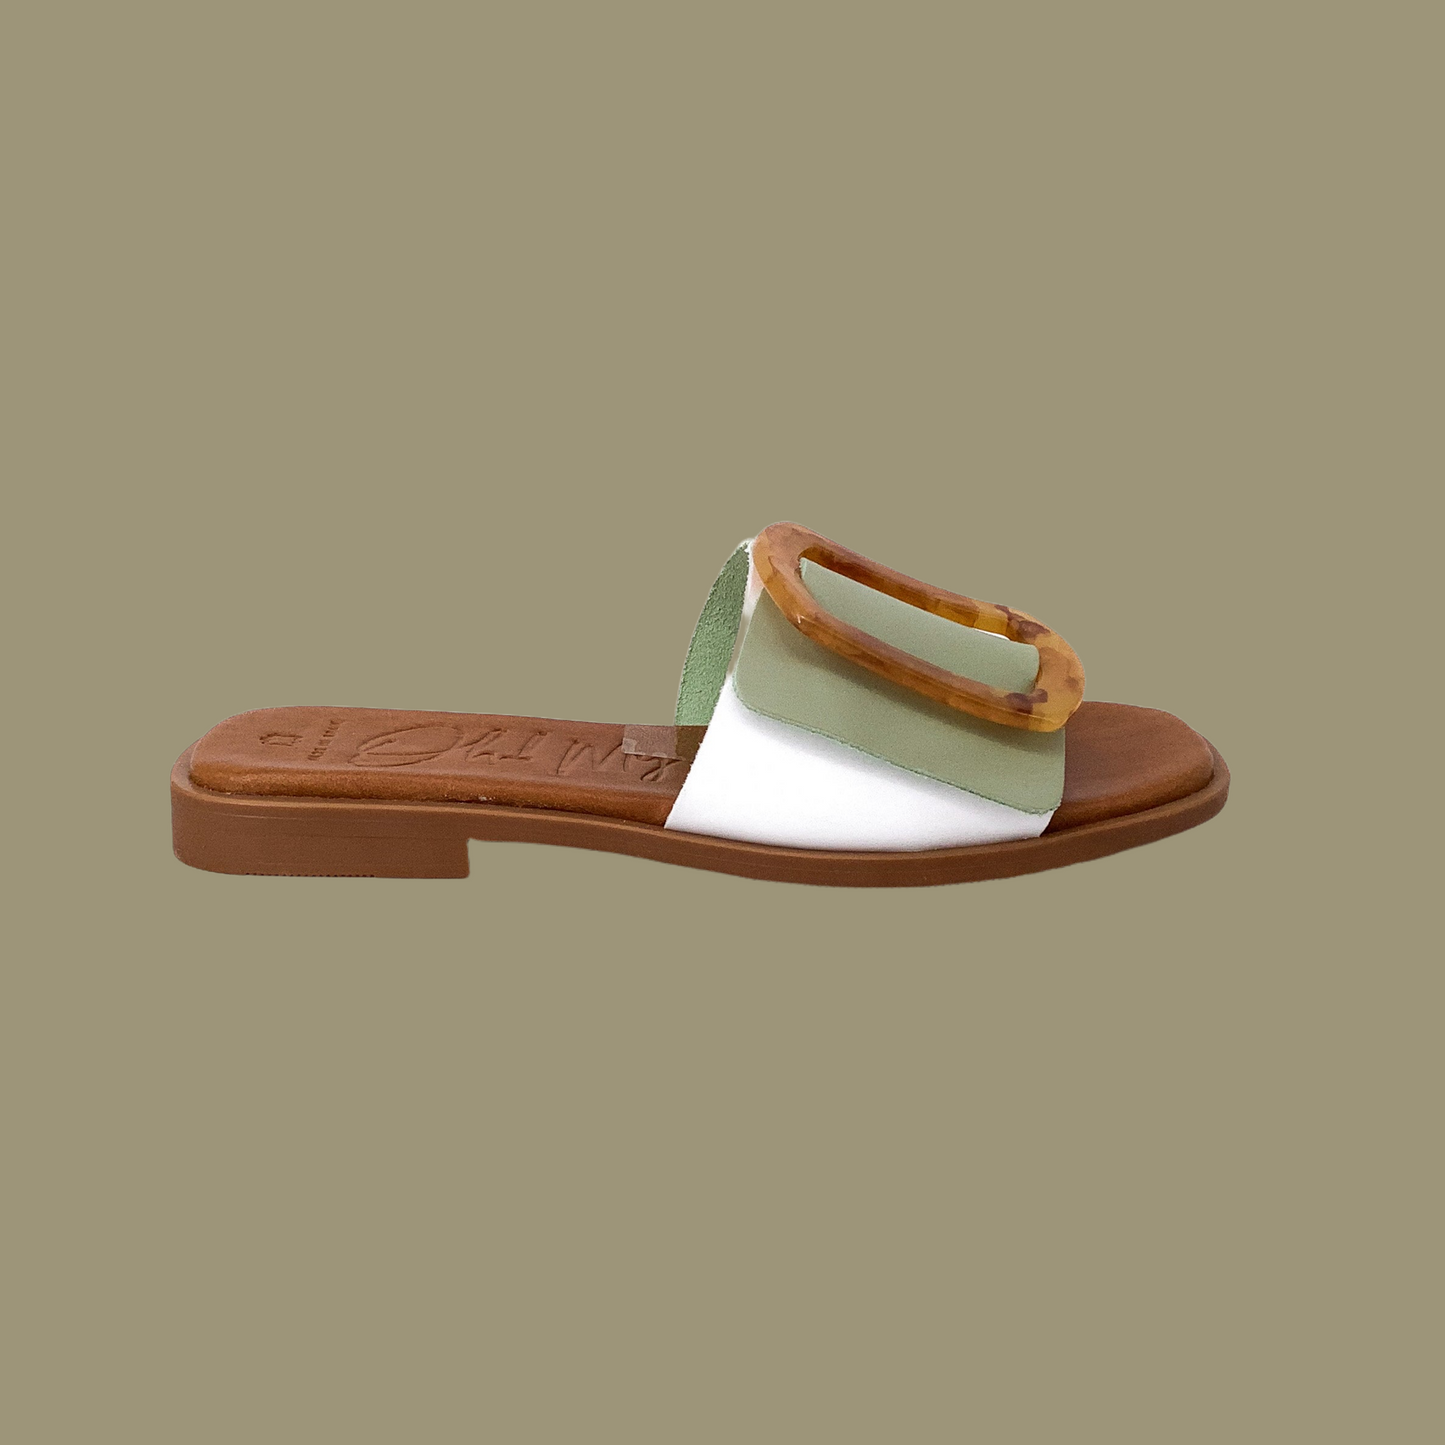 Oh My Sandals! 5155 Blanco Alga